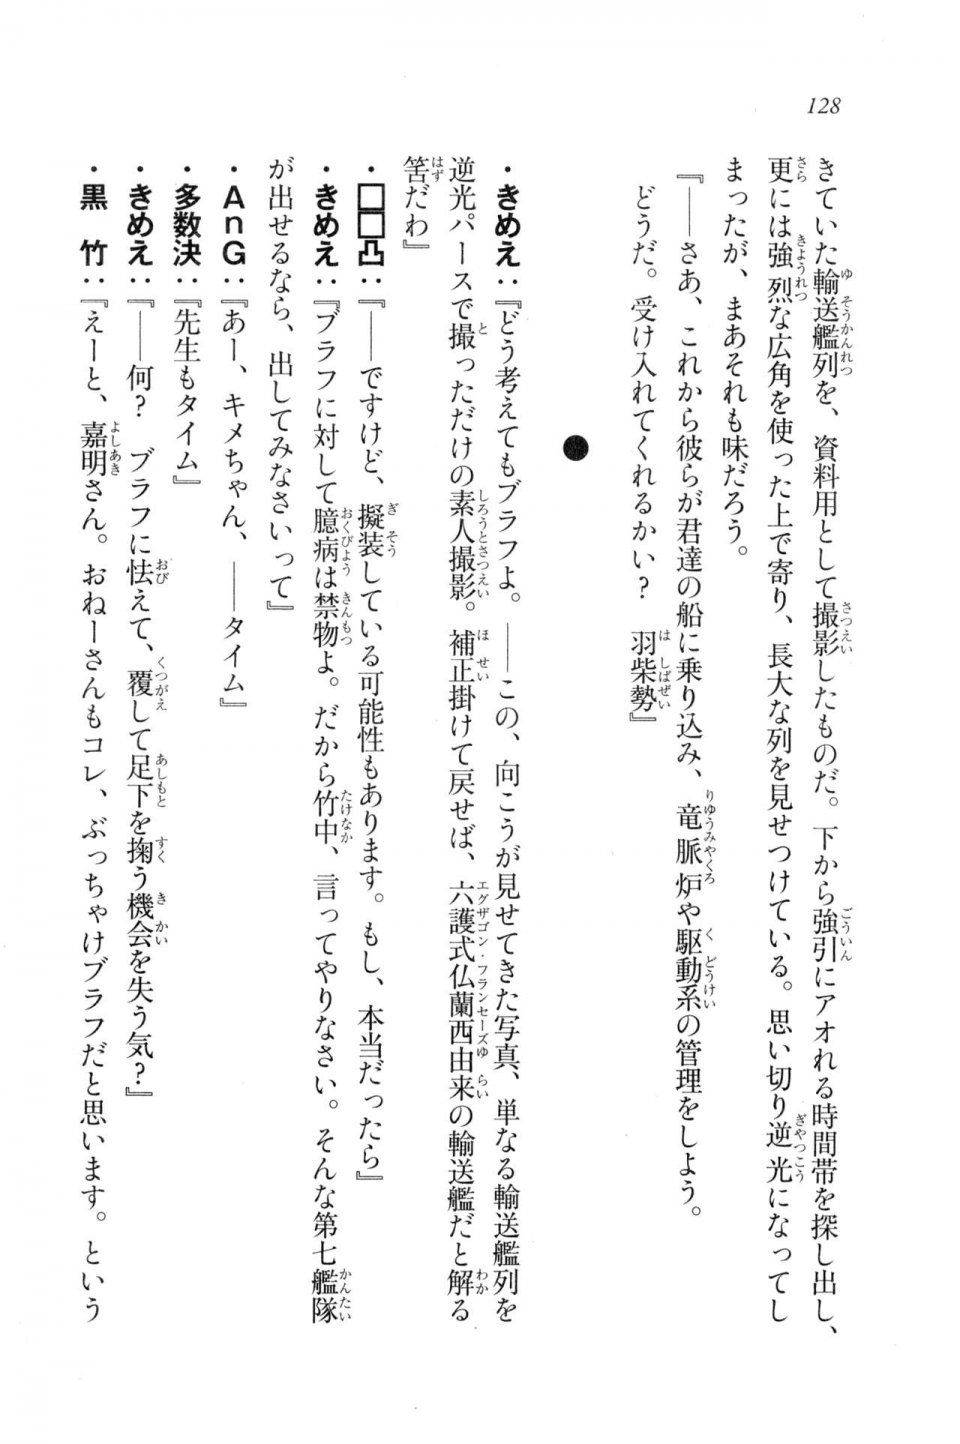 Kyoukai Senjou no Horizon LN Vol 20(8B) - Photo #128